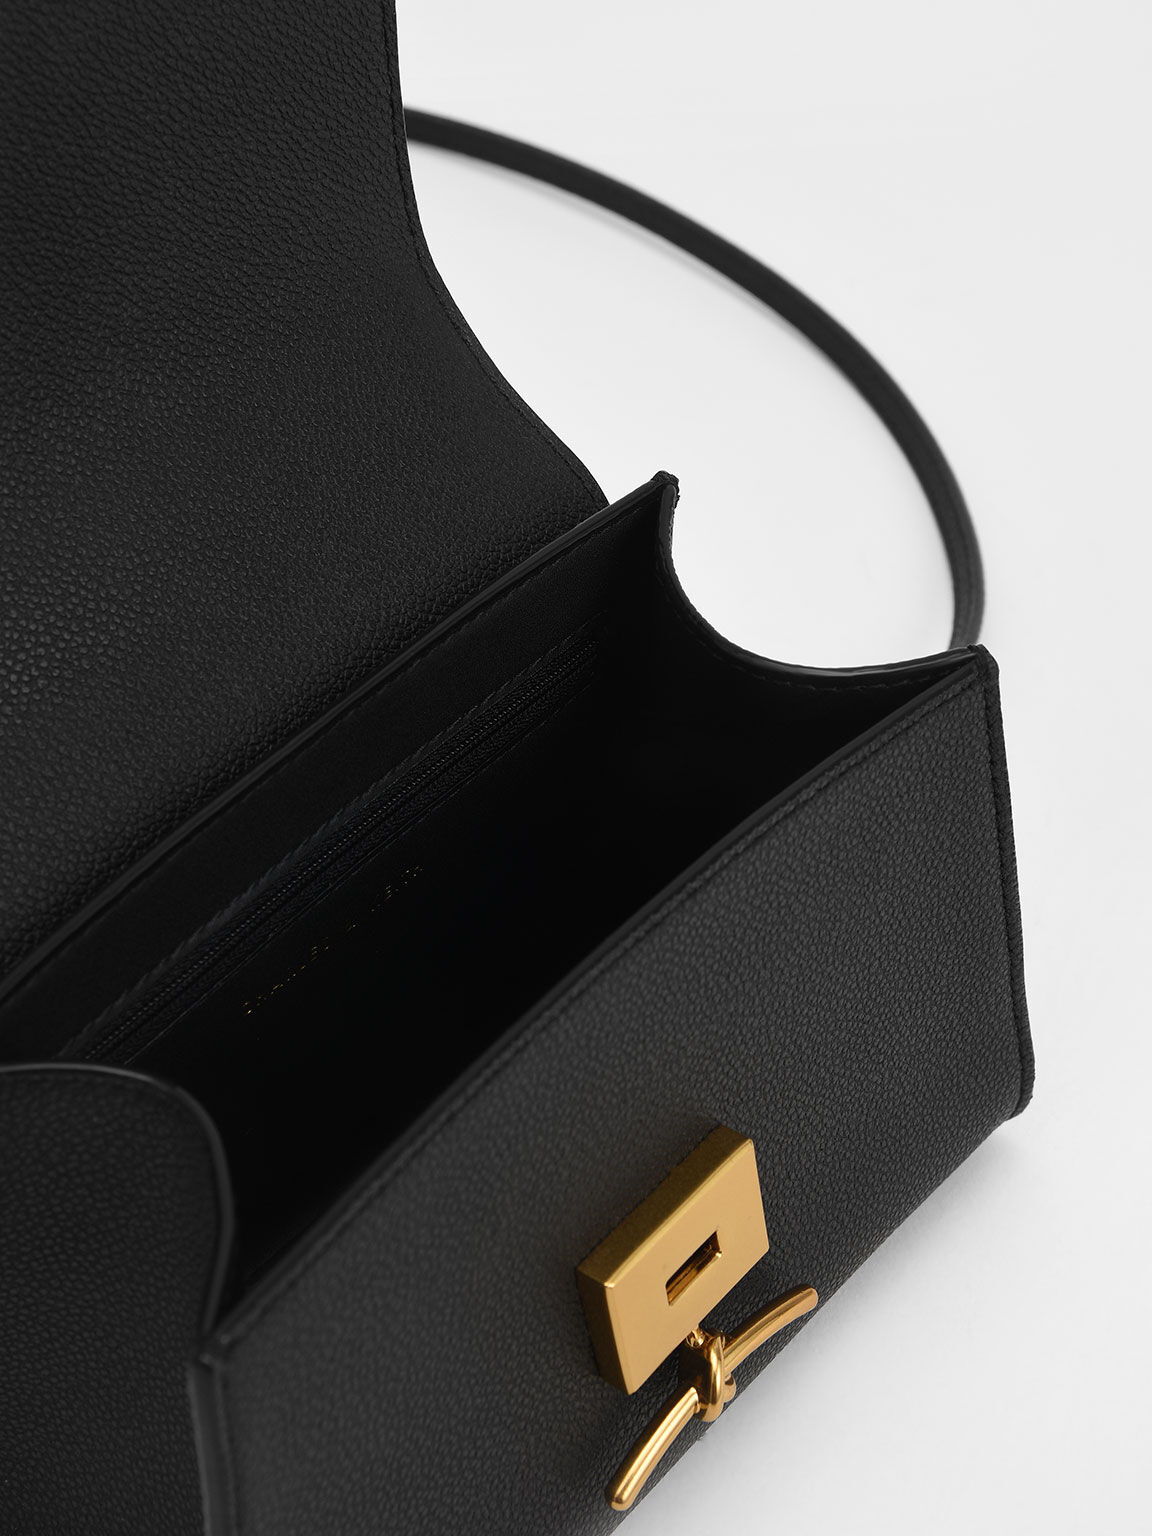 Huxley Metallic Push-Lock Top Handle Bag, Black, hi-res